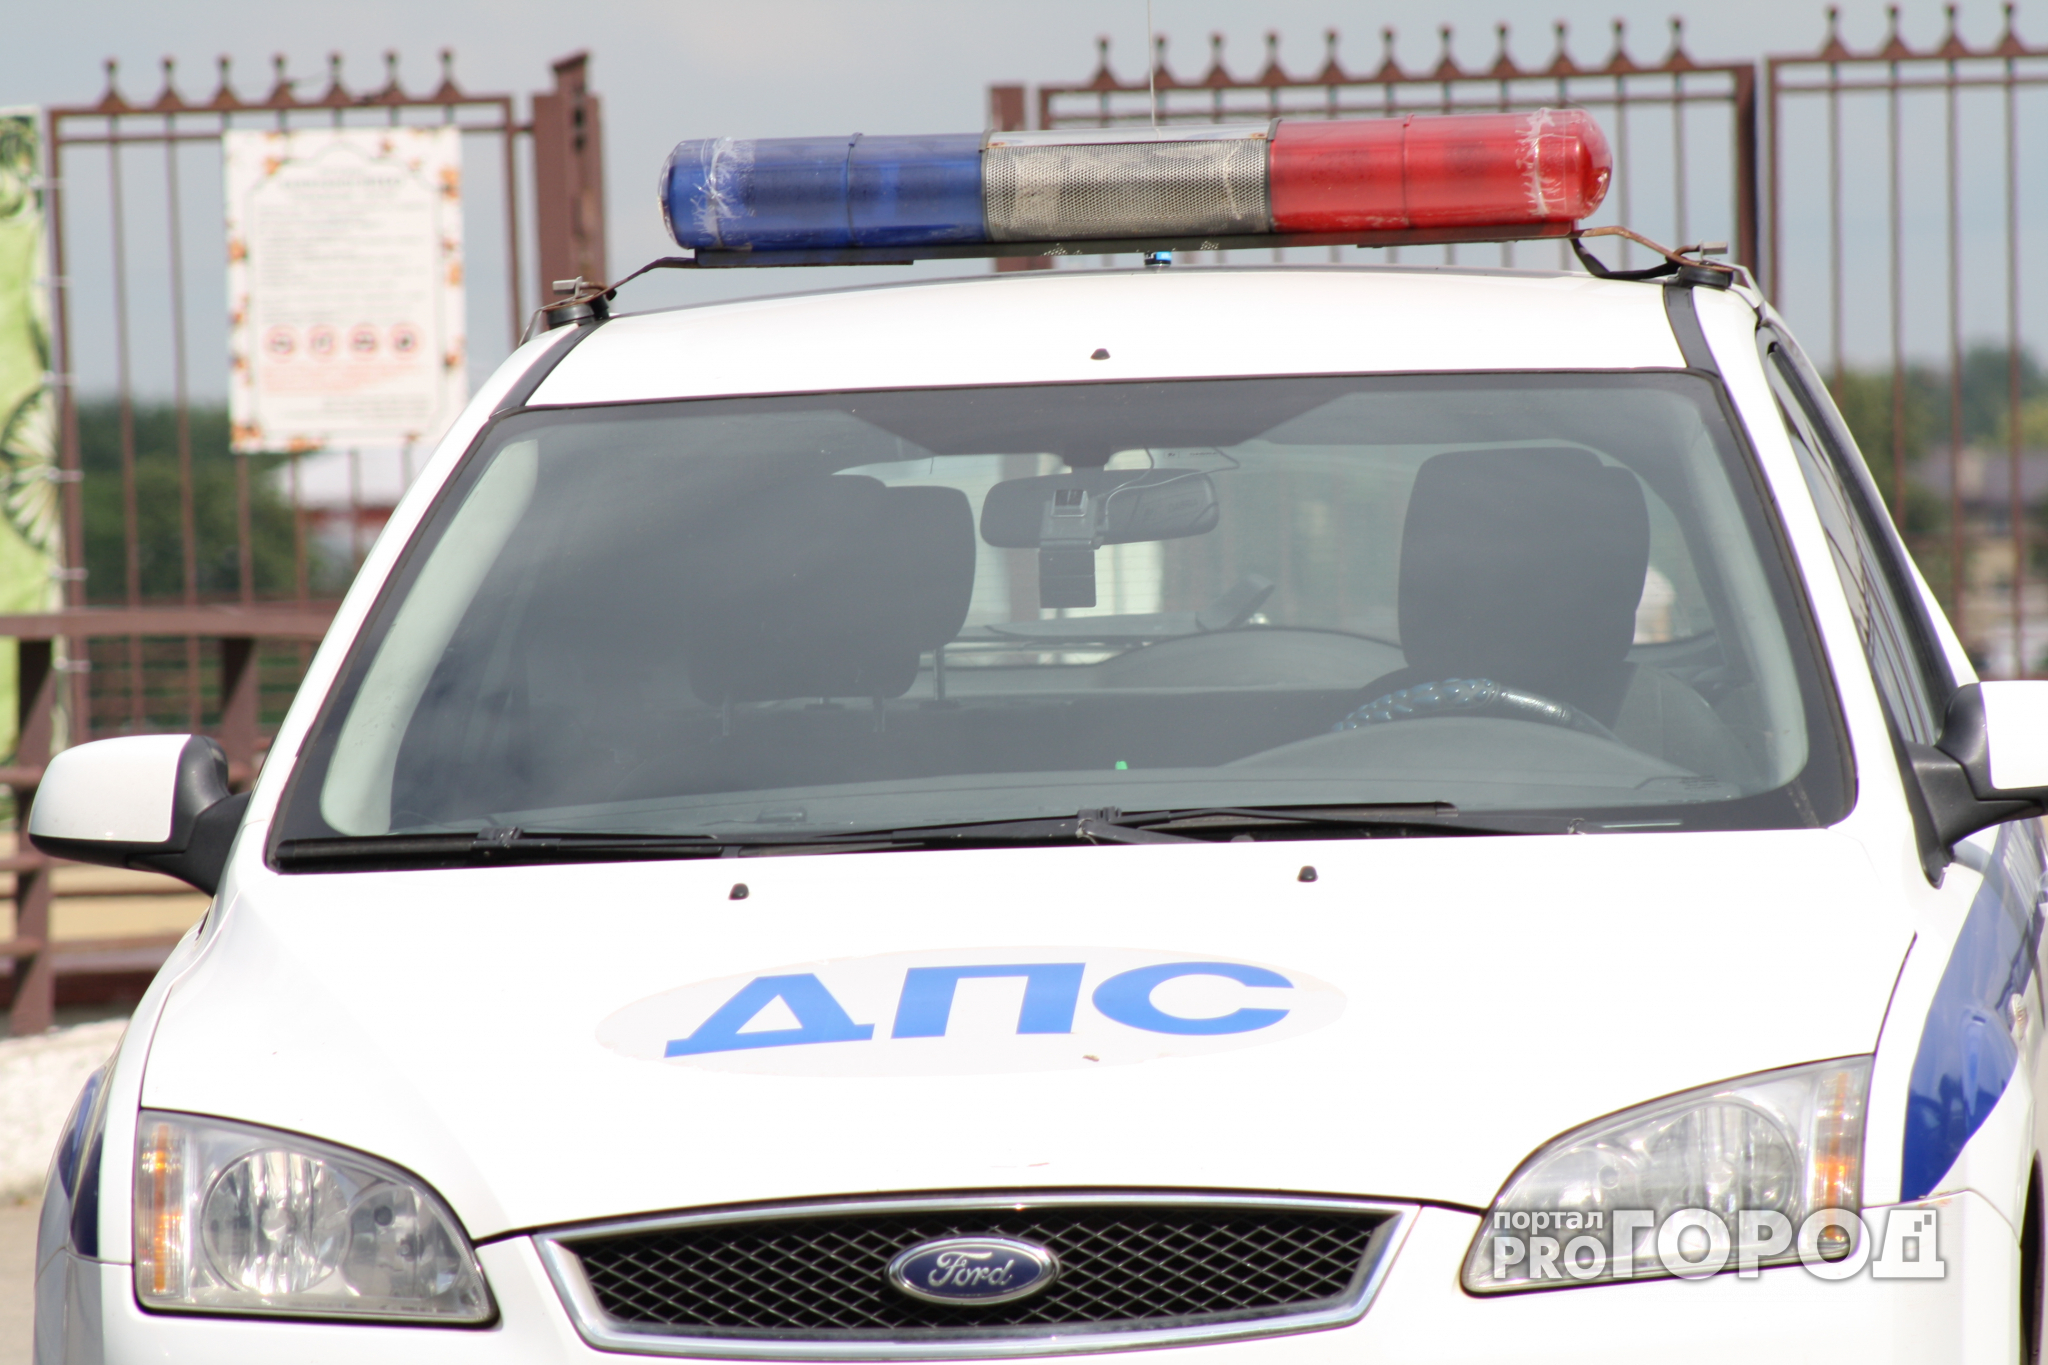 Пьяная автоледи погибла на нижегородской трассе (ФОТО)